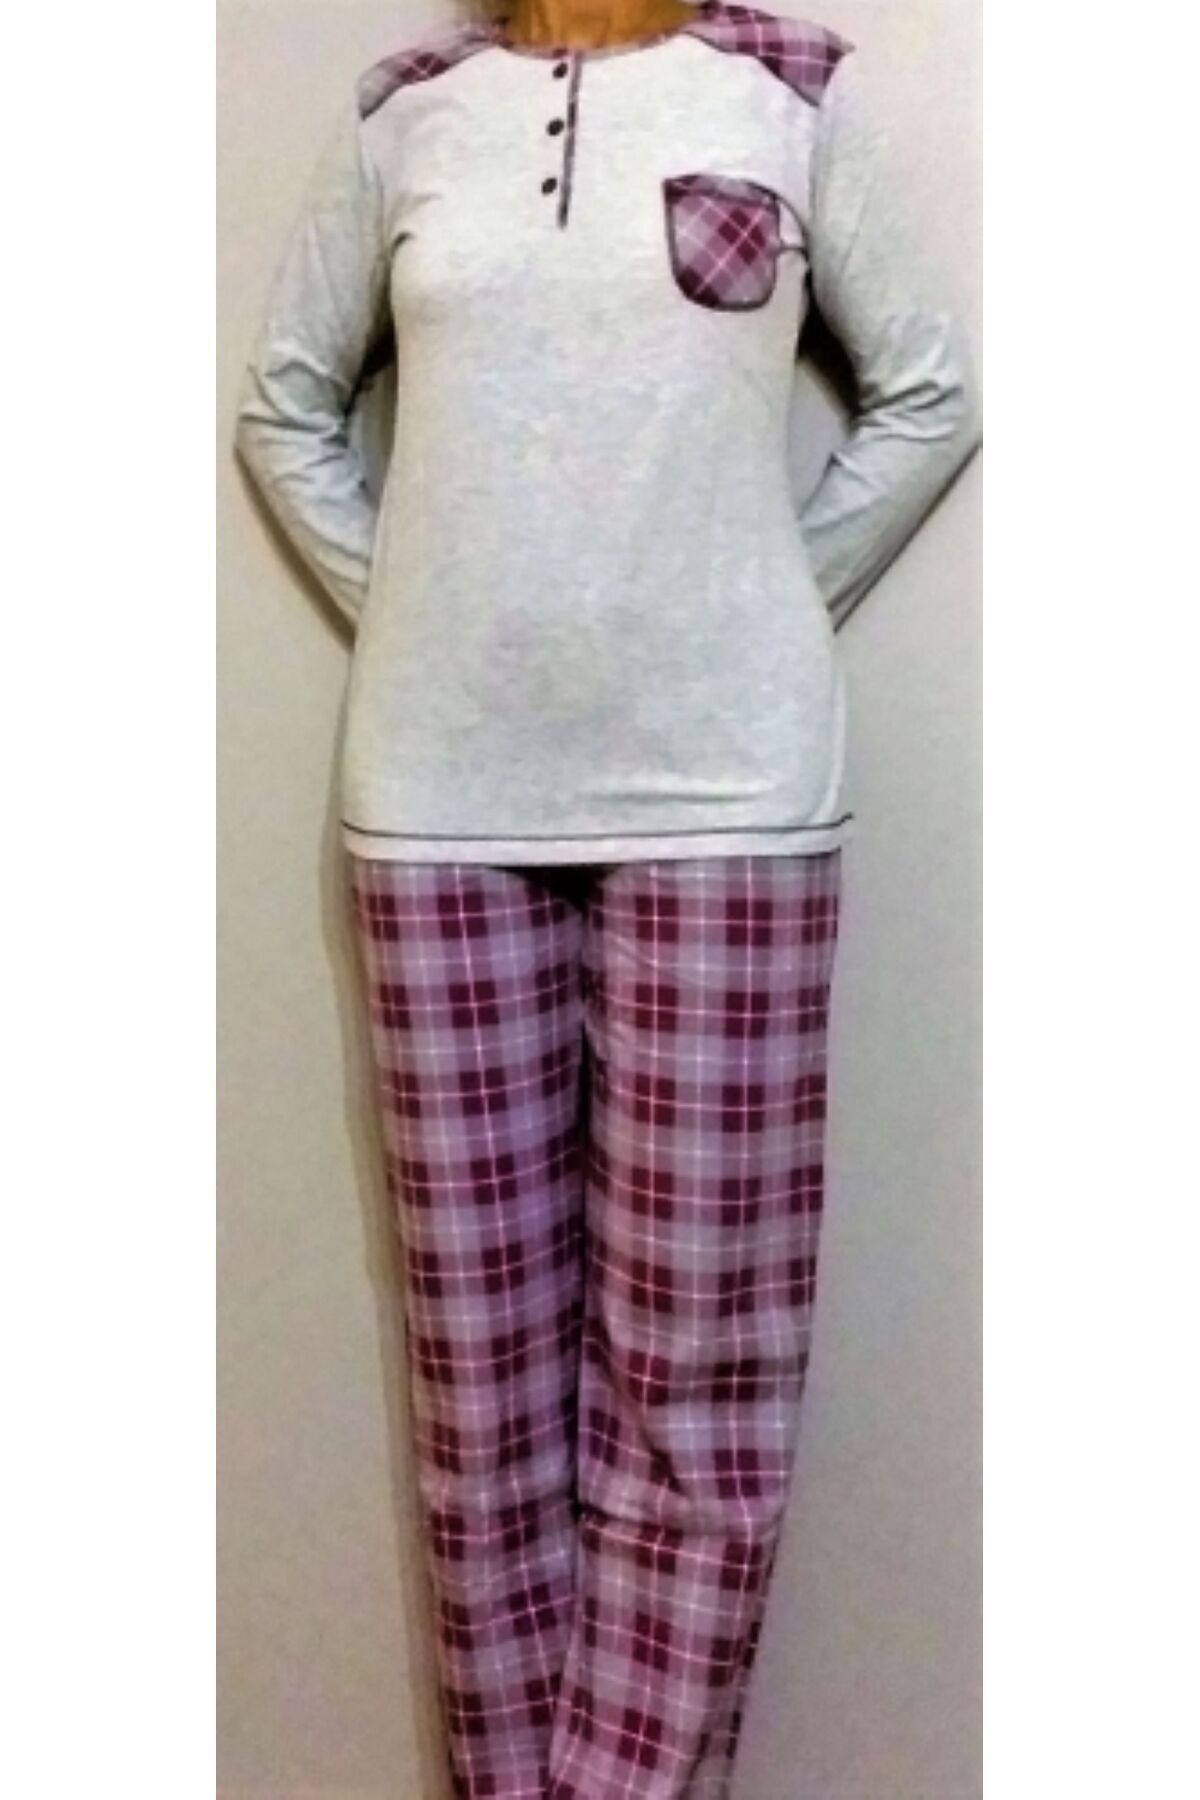 Marilyn Pijama uzun kol pijama takımı GRİ